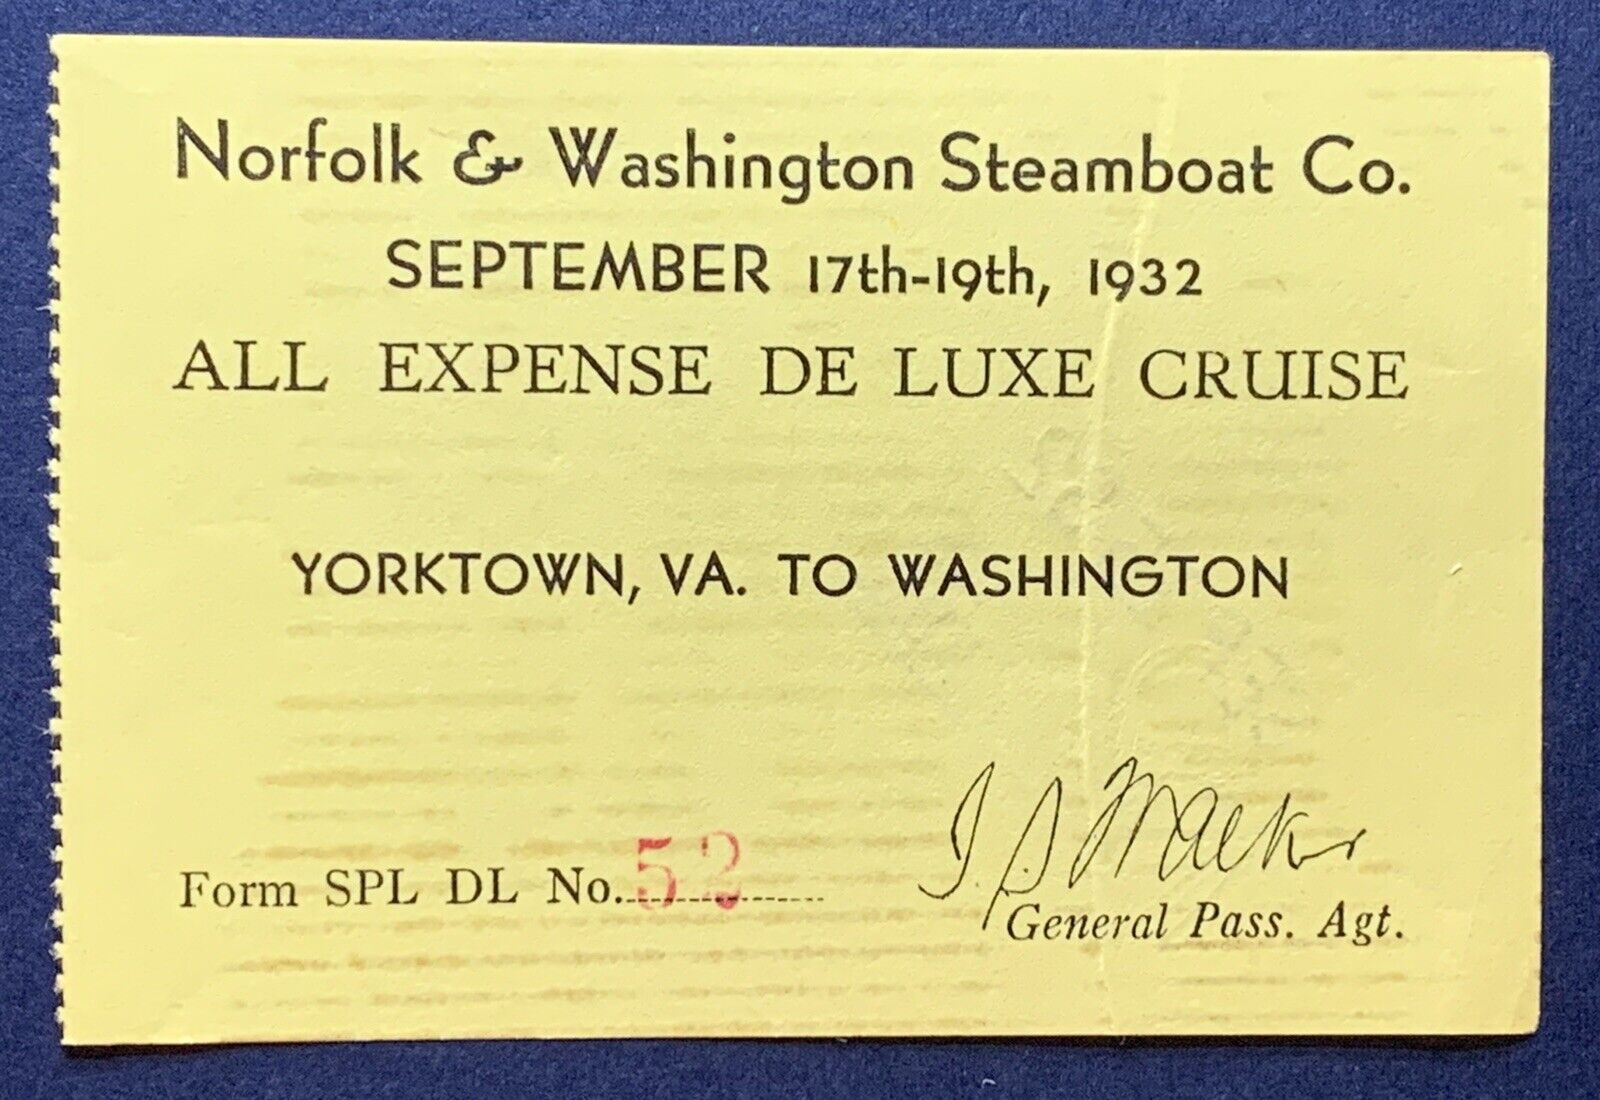 1932 NORFOLK & WASHINGTON STEAMBOAT CO. TICKET YORKTOWN VA TO WASHINGTON